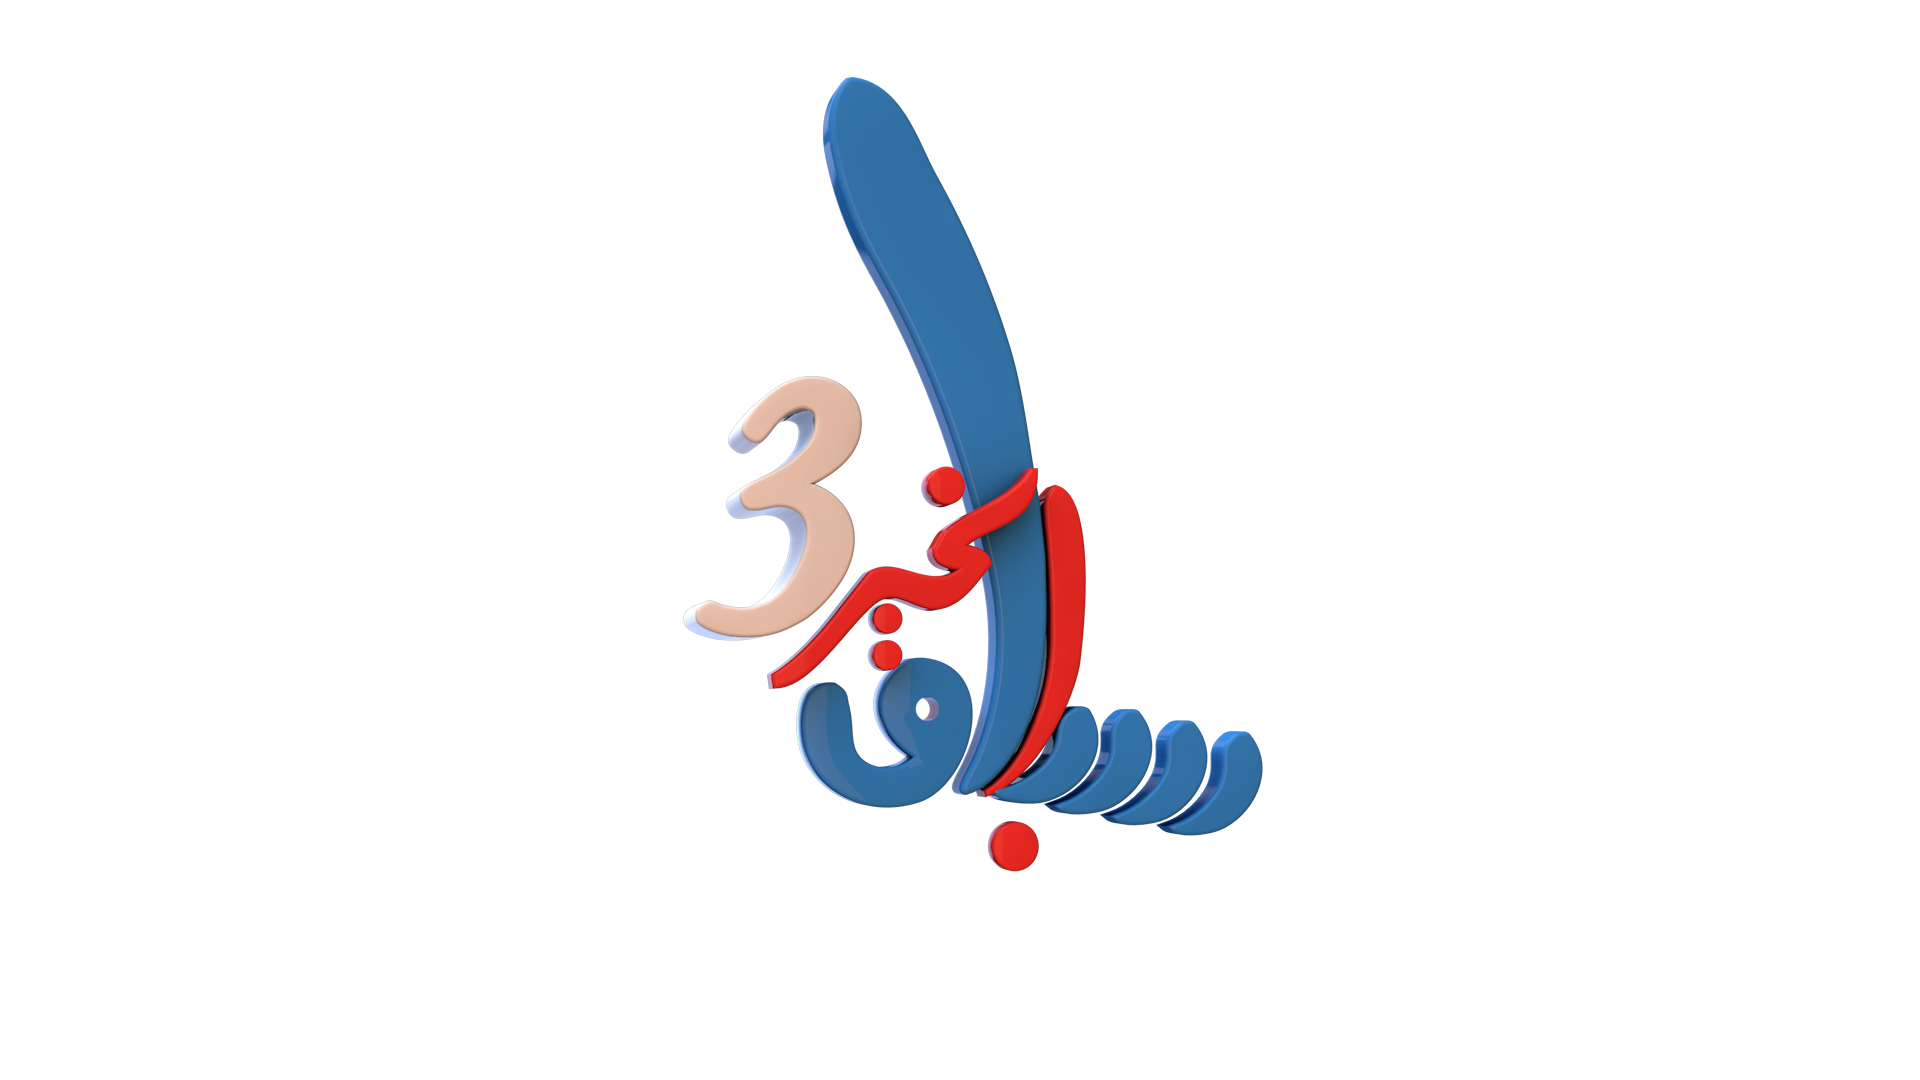 برنامج سباق الخير الموسم الثالث برنامج رمضاني 1443هـ 2022م انتاج قناة عدن الفضائية 